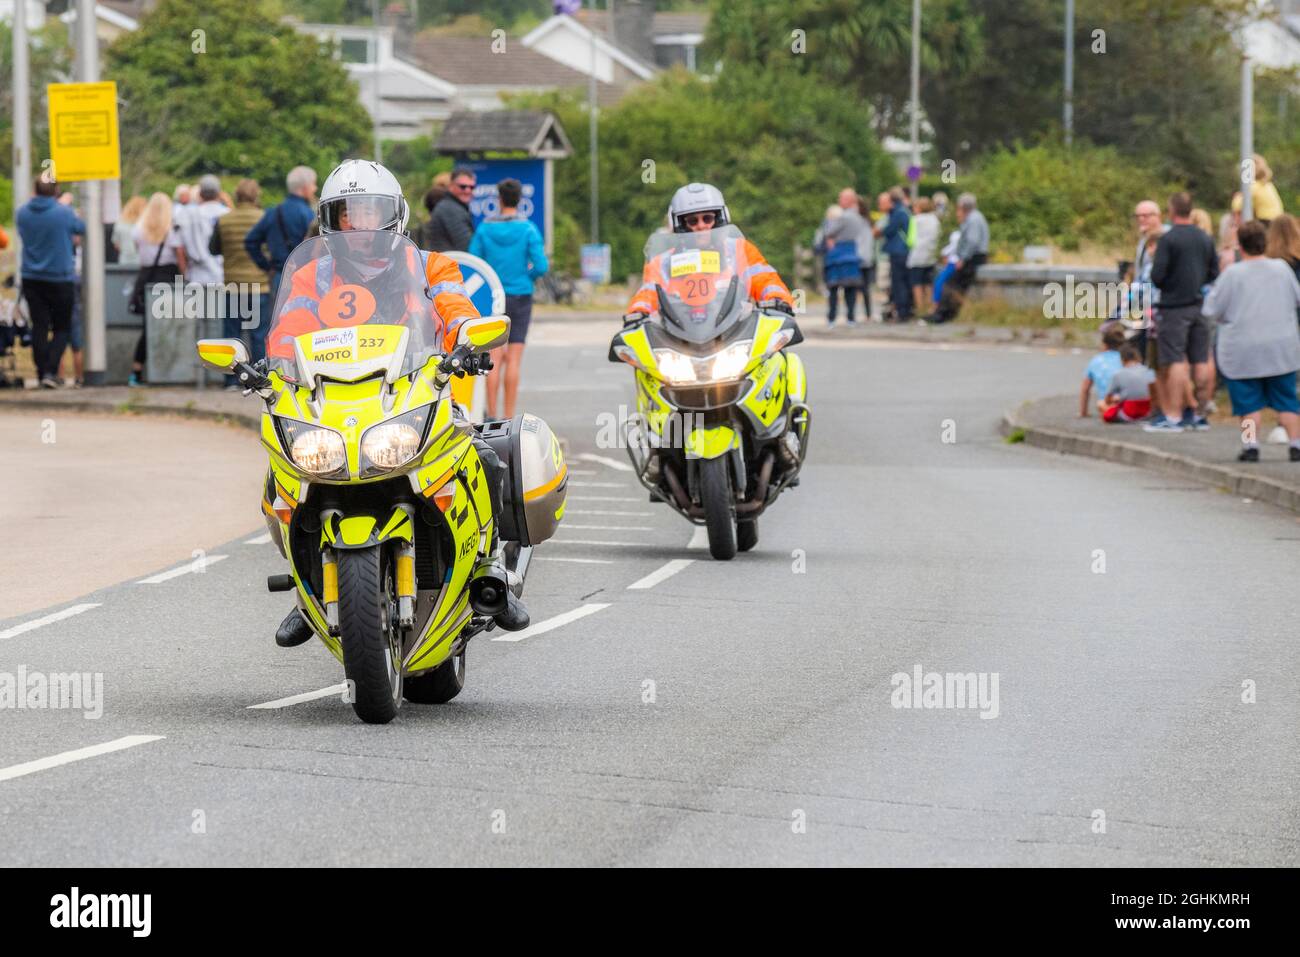 Sicherheitsmarschall für Straßenrennen auf Motorrädern, die in Newquay in Cornwall während der Eröffnungsphase der kultigen Tour of Britain 2021 - bekannt als das Gras - fahren Stockfoto